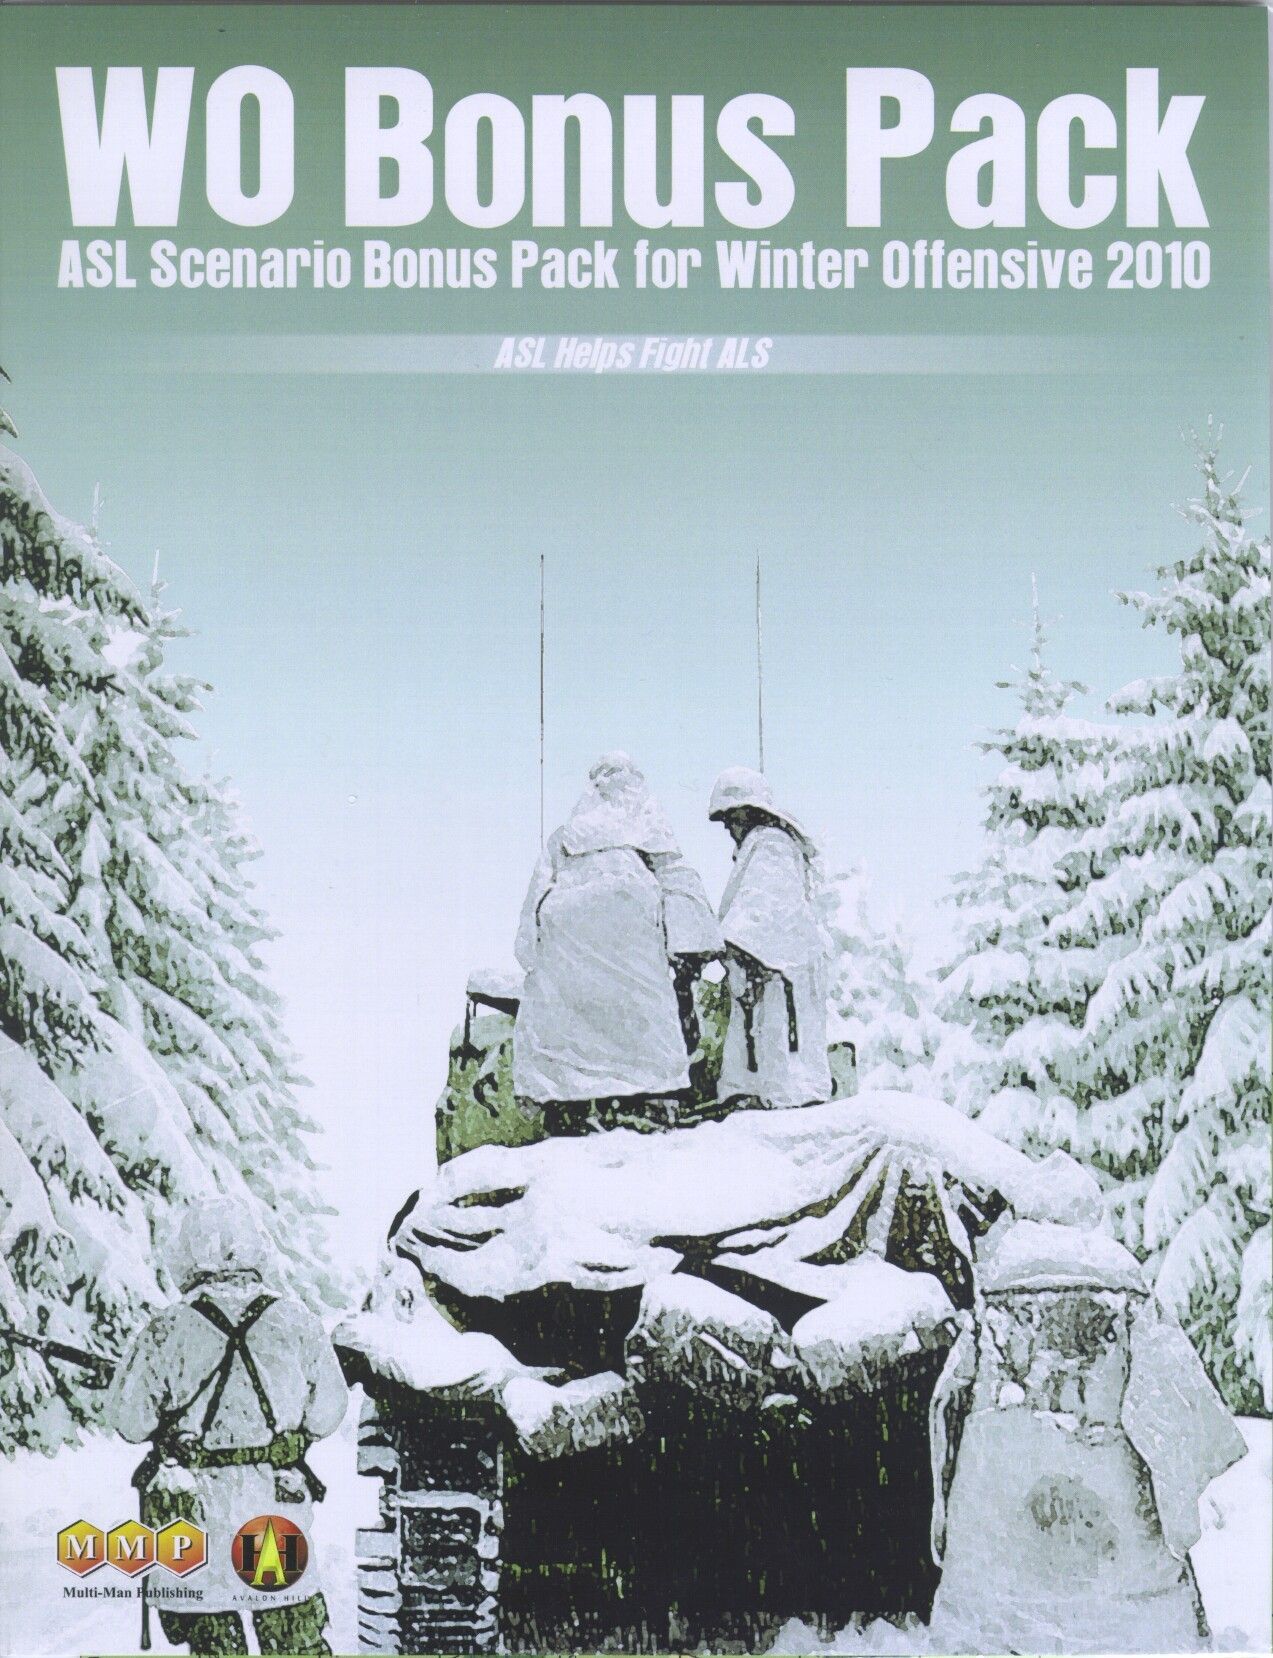 WO Bonus Pack #1: ASL Scenario Bonus Pack for Winter Offensive 2010